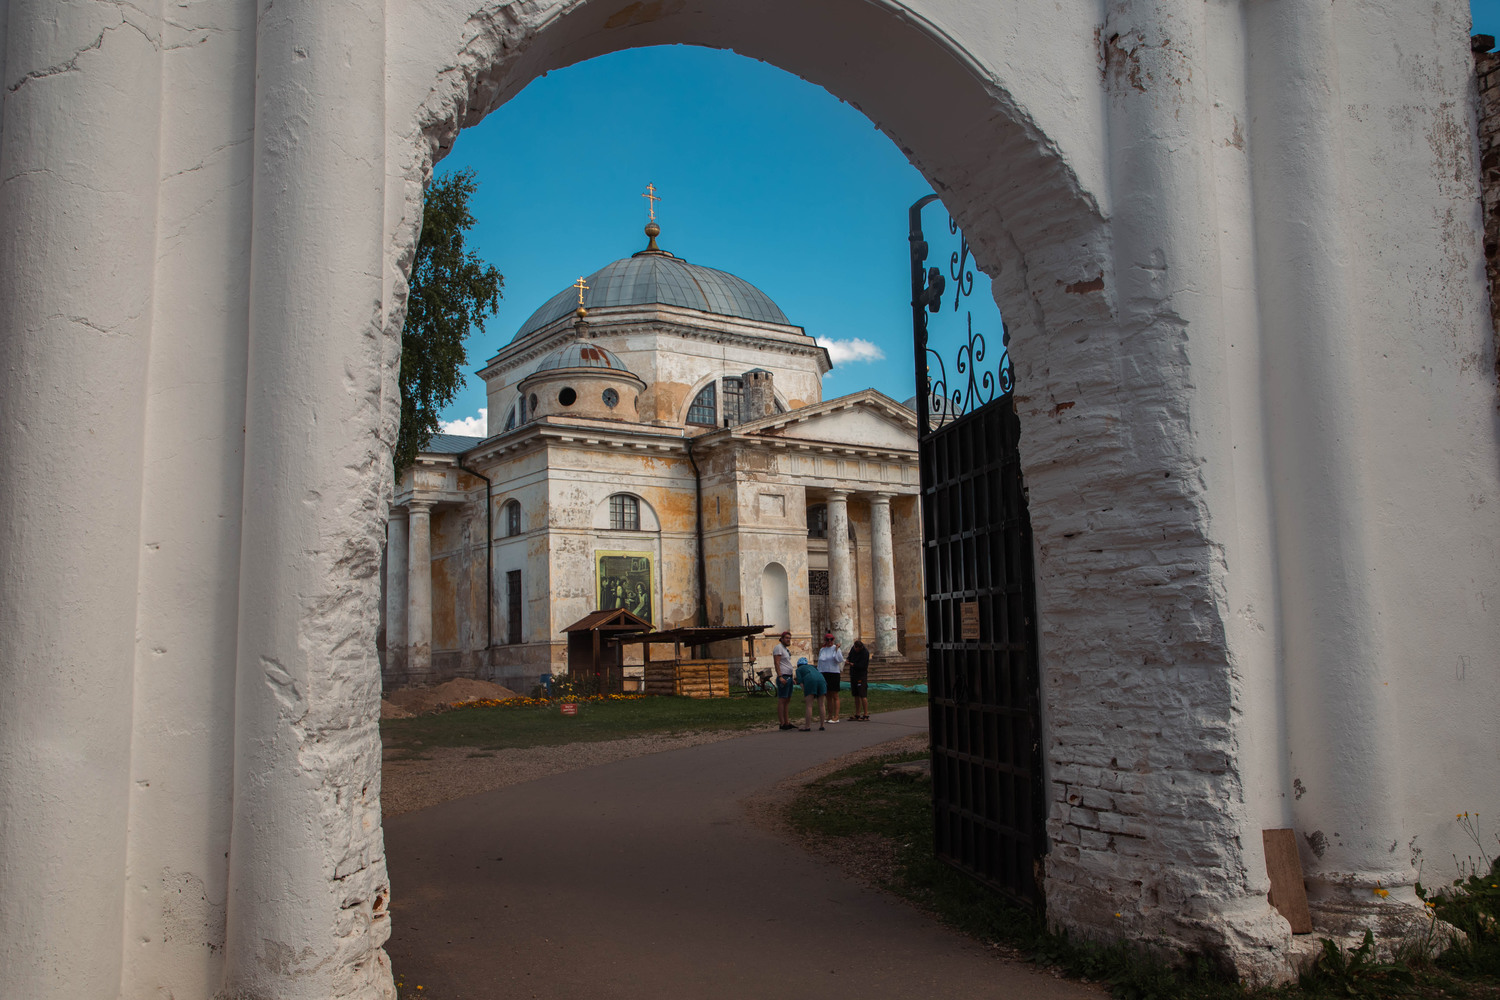 Какие необычные находки сделали археологи на территории Борисоглебского монастыря в Торжке